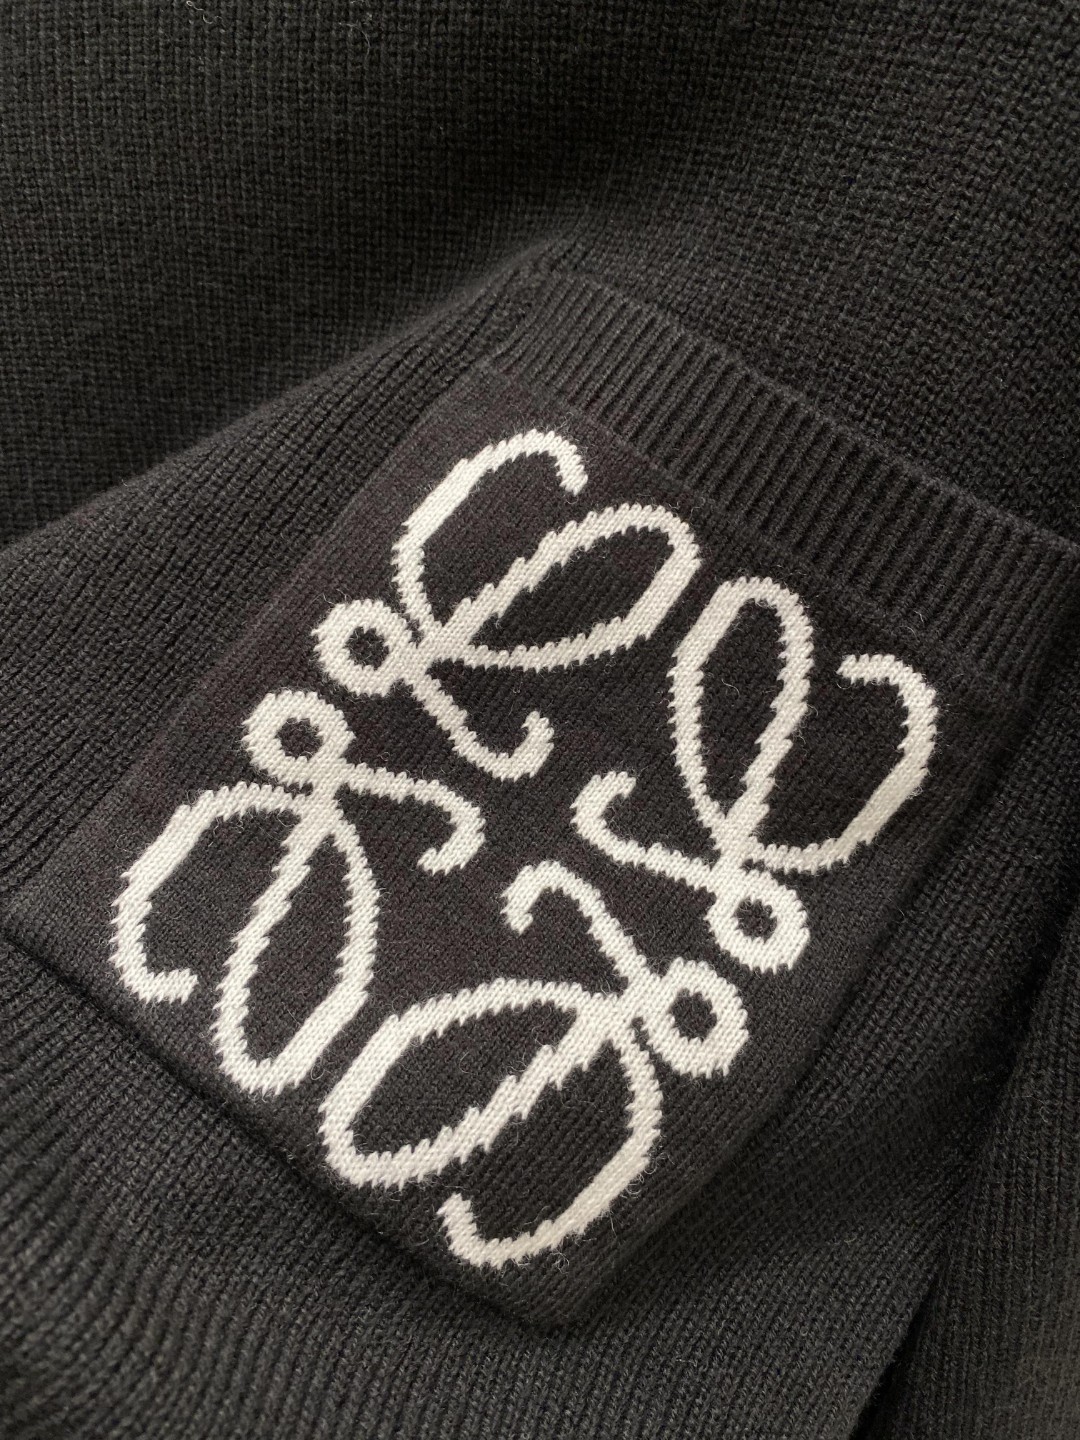 ロエベ 知恵袋スーパーコピー 暖かい トップス 長袖セーター シンプル 品質保証 ファッション ブラック_5